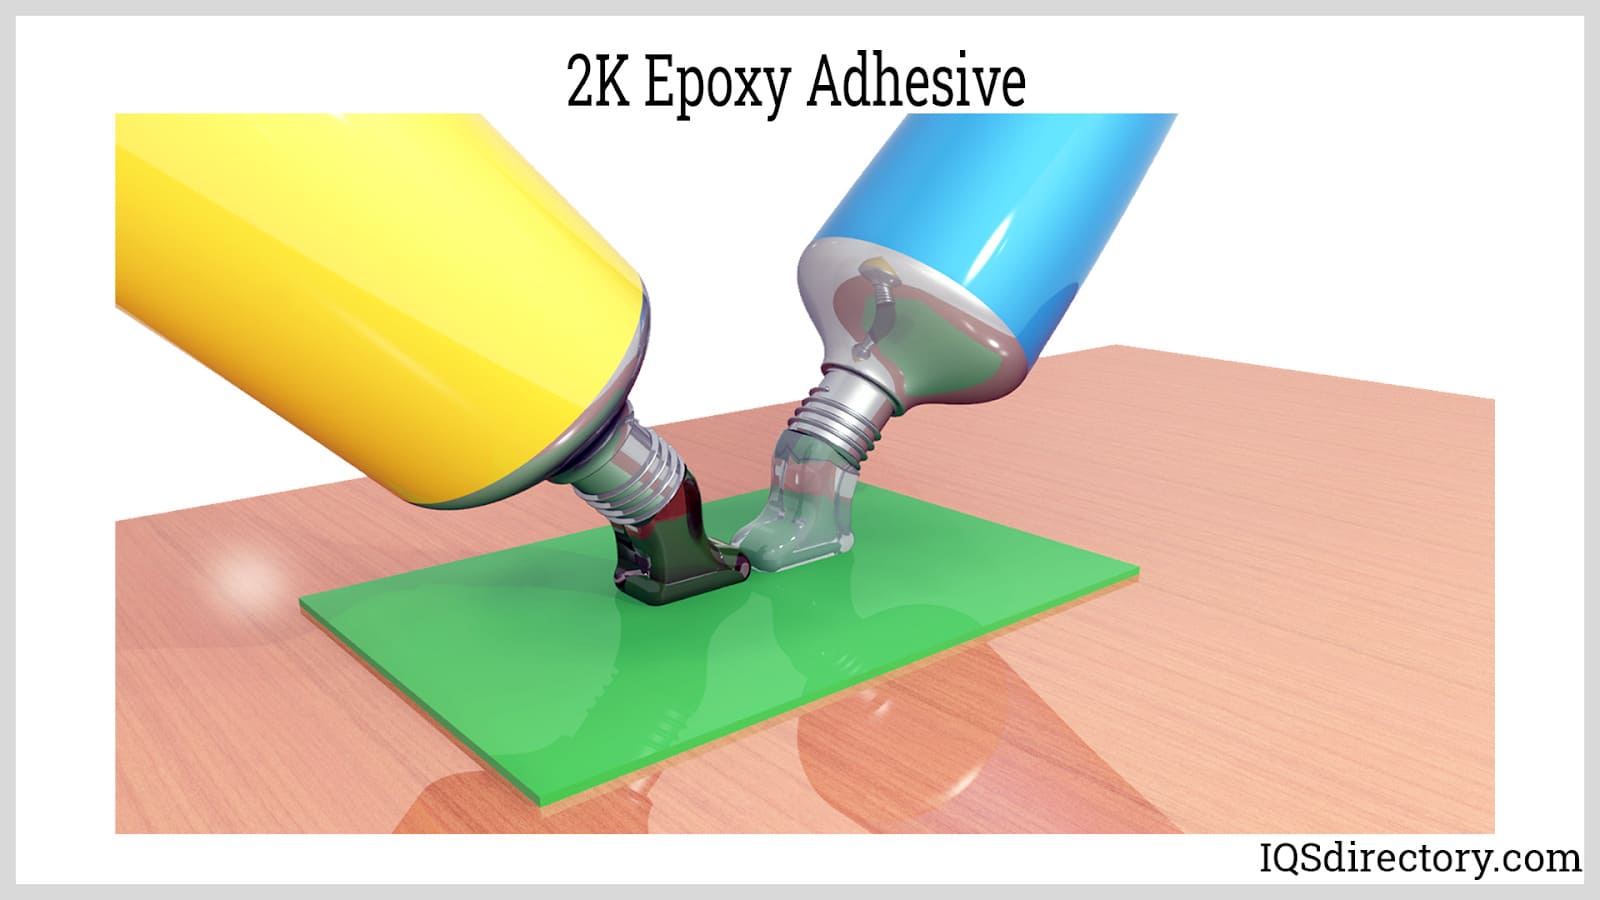 2K Epoxy Adhesive